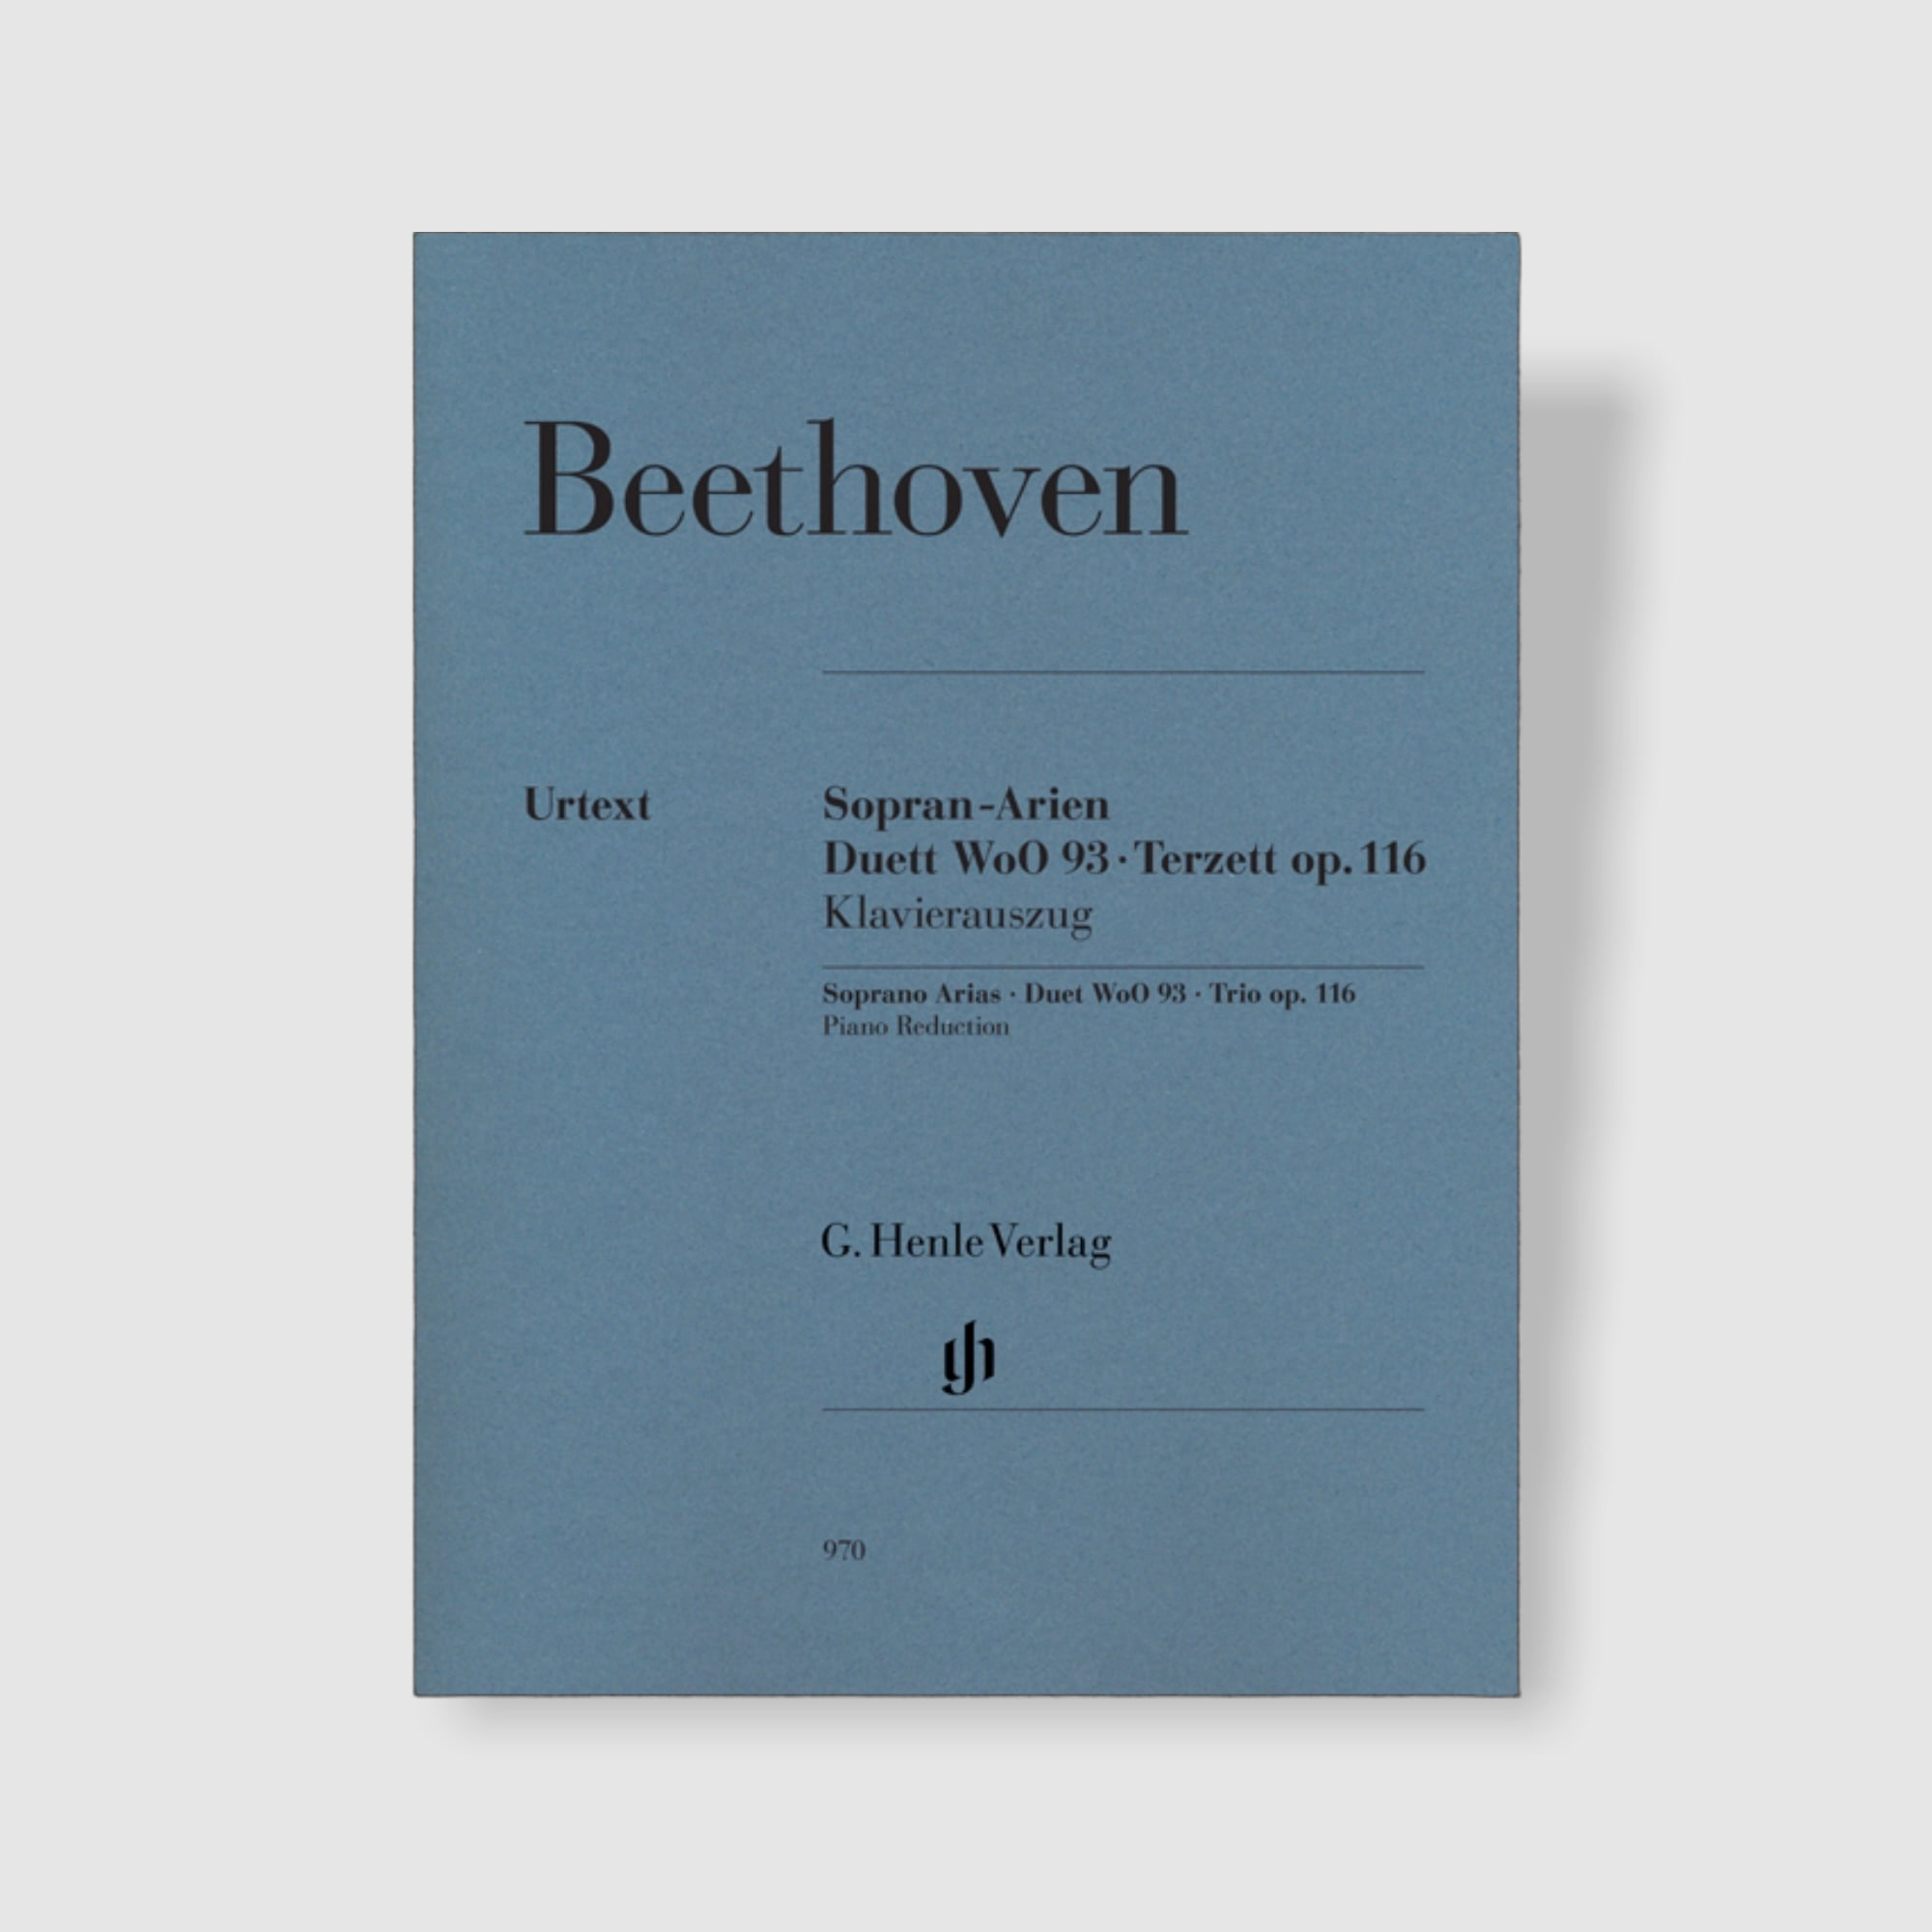 베토벤 소프라노 아리아집 듀엣 WoO 93, 트리오 Op. 116